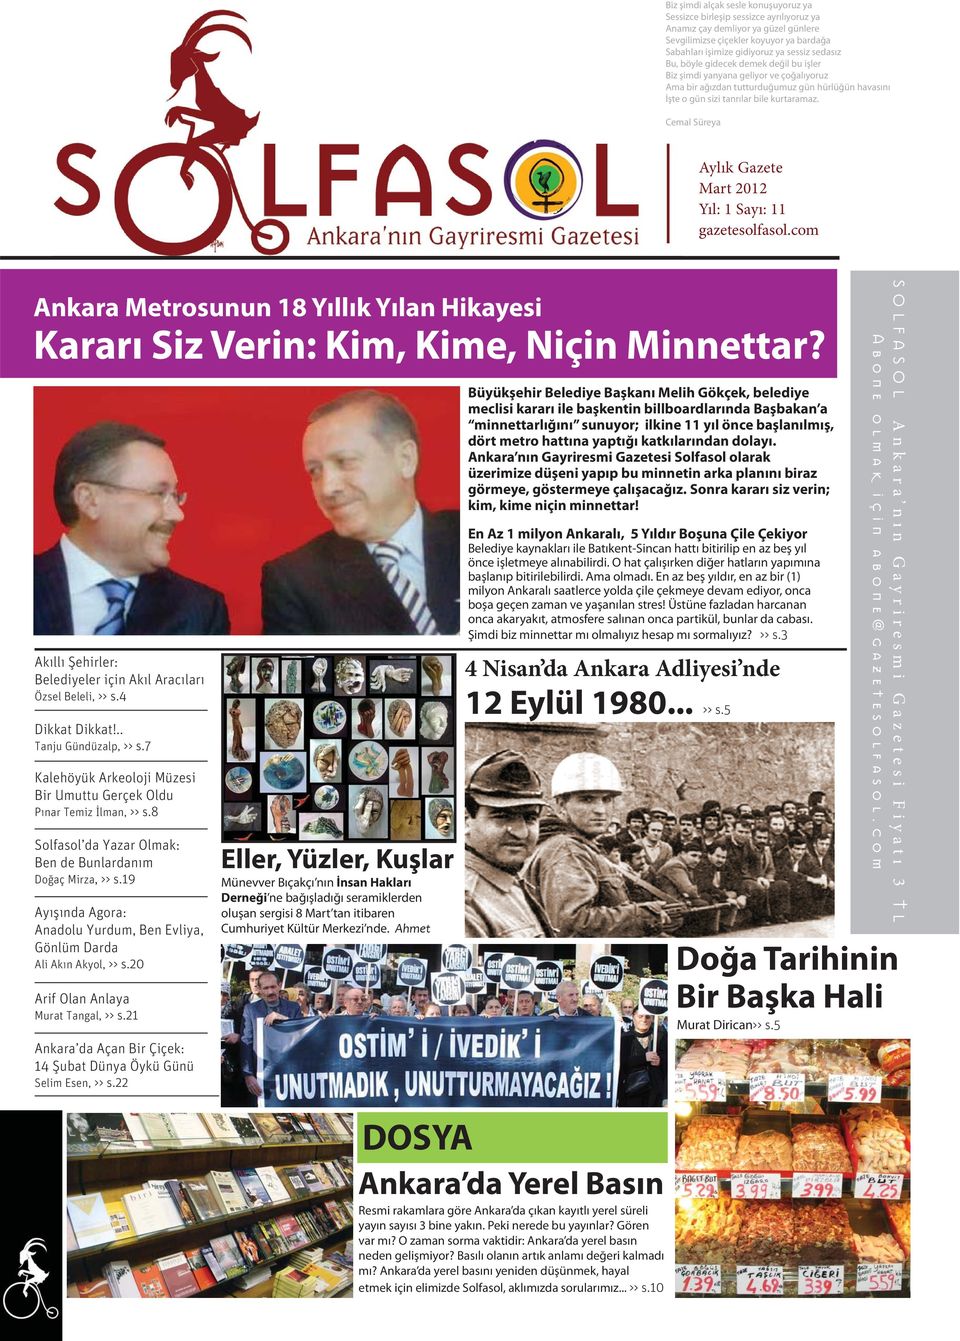 Cemal Süreya Aylık Gazete Mart 2012 Yıl: 1 Sayı: 11 gazetesolfasol.com Ankara Metrosunun 18 Yıllık Yılan Hikayesi Kararı Siz Verin: Kim, Kime, Niçin Minnettar?